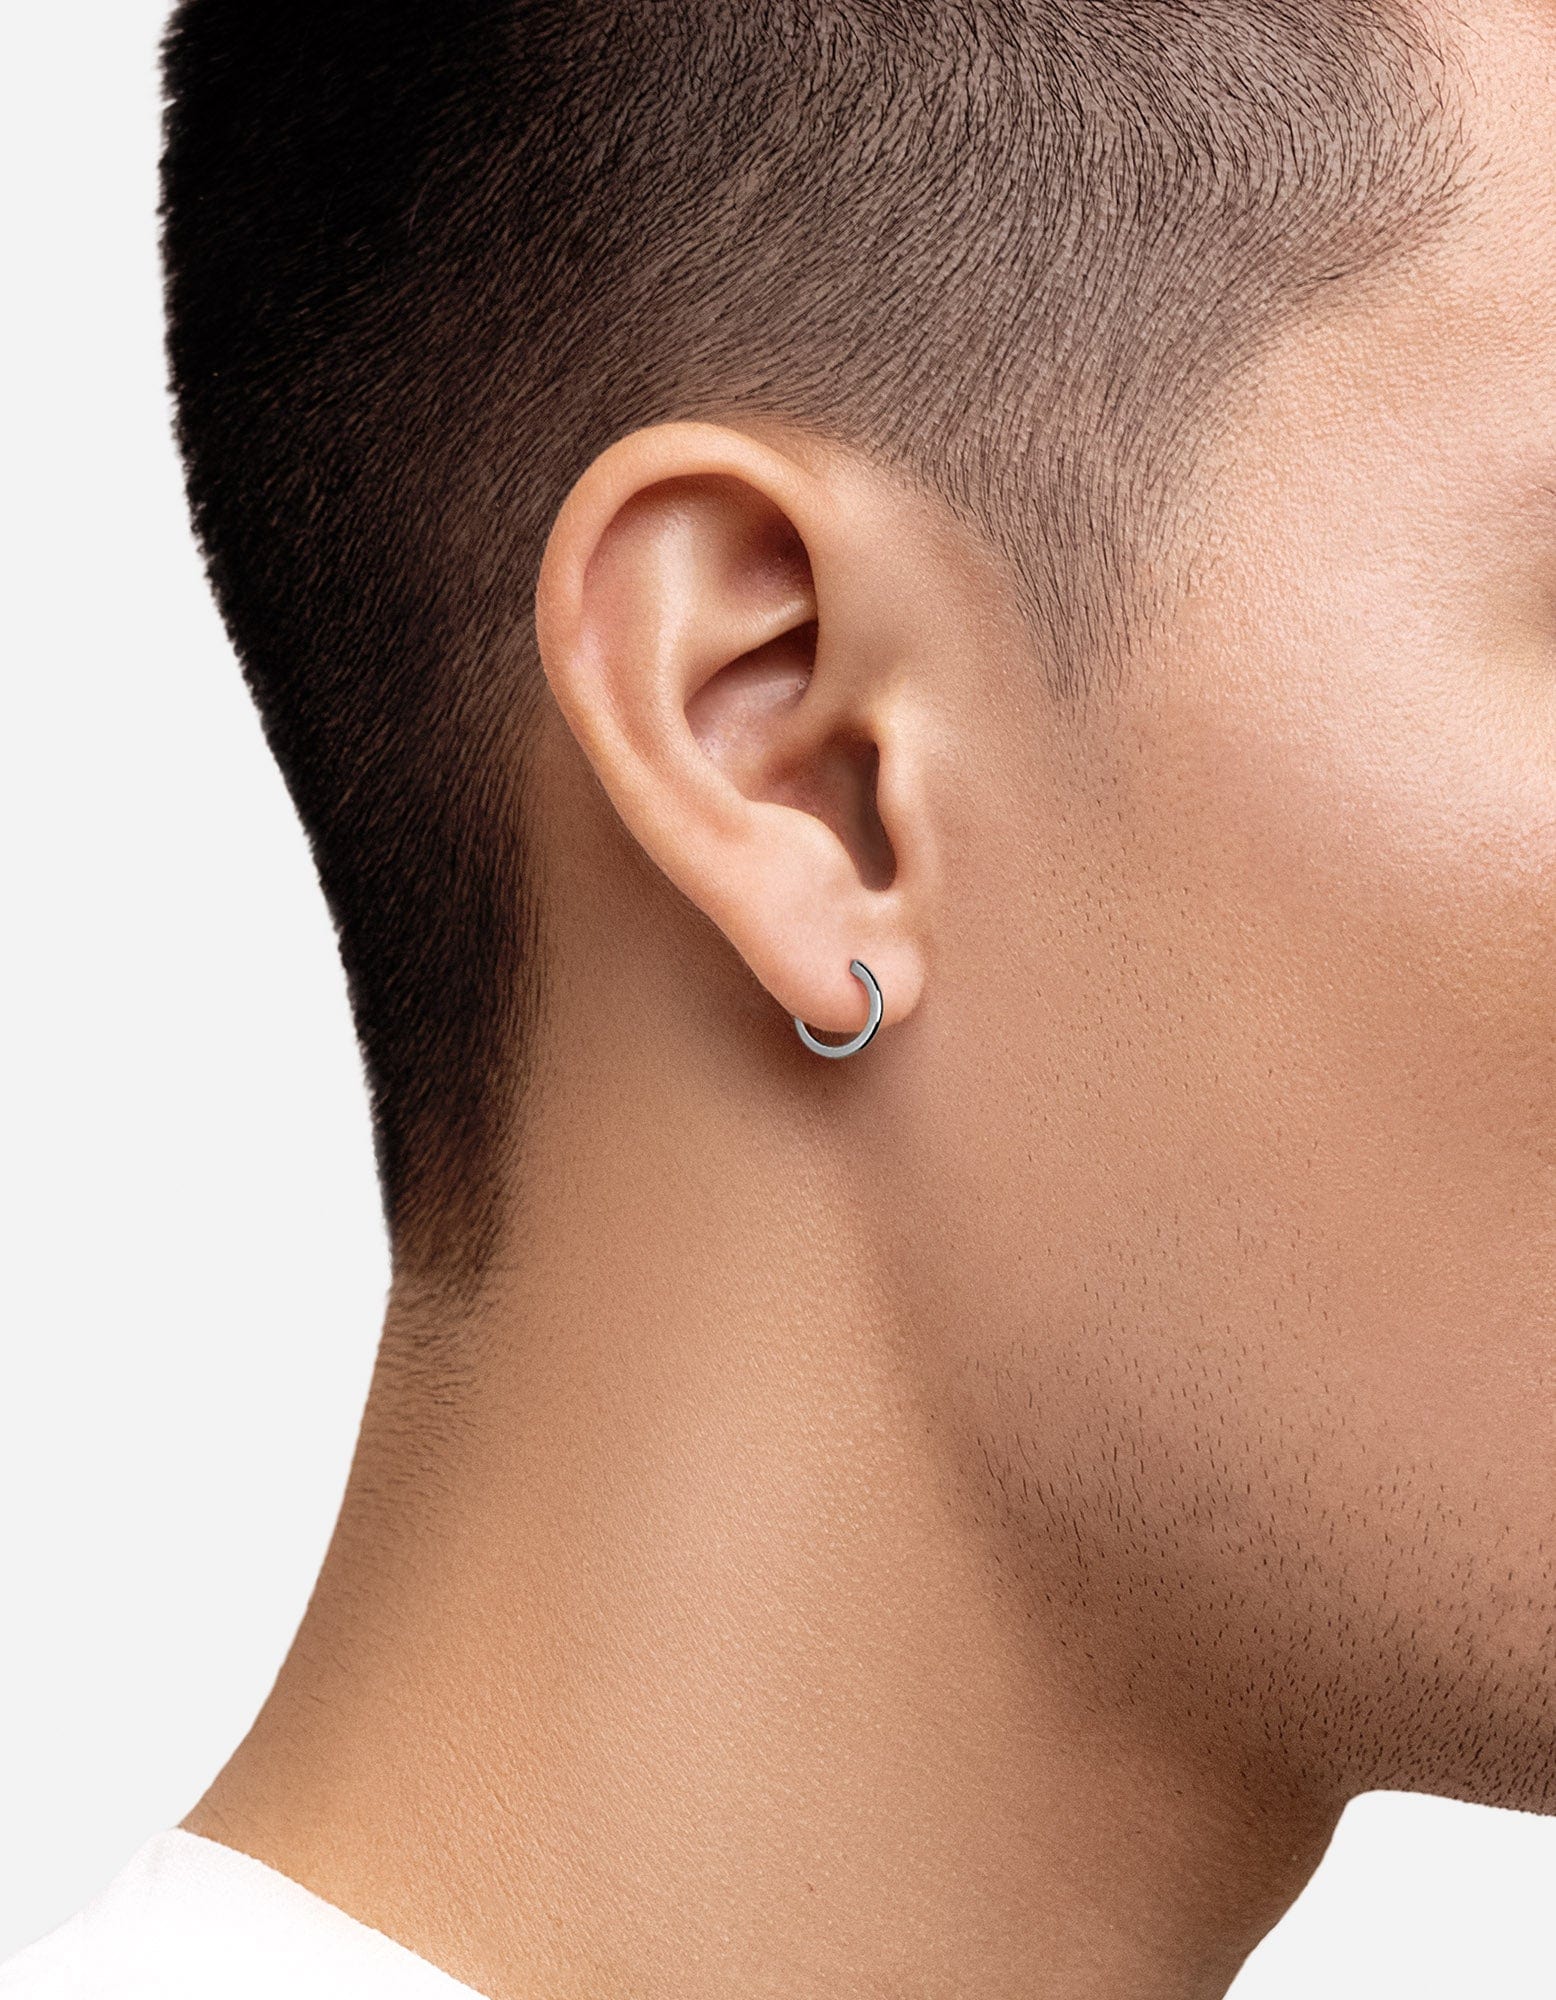 Single Mens Hoop Earring 925 Sterling Silver Earring for Men Oval Earring  for Mens Jewelry 15mm Thick Earring for Him Guys Earring - Etsy | Men  earrings, Mens earrings hoop, Unisex earrings